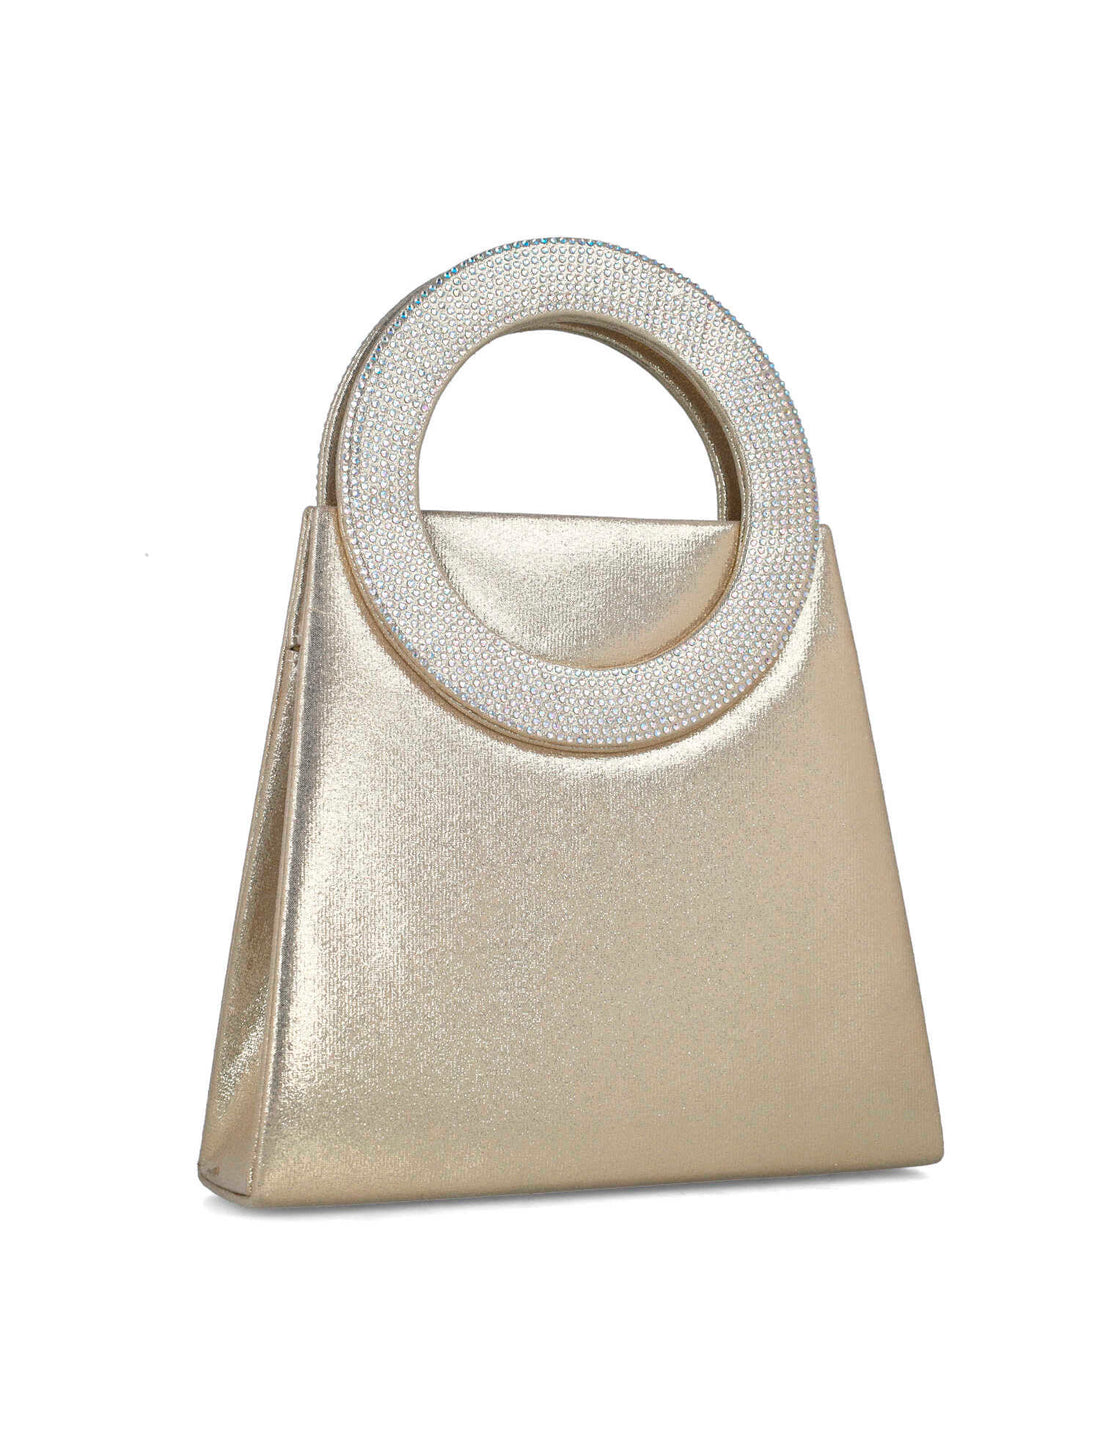 Gold Handbag With Embellished Hand Strap_85508_00_02